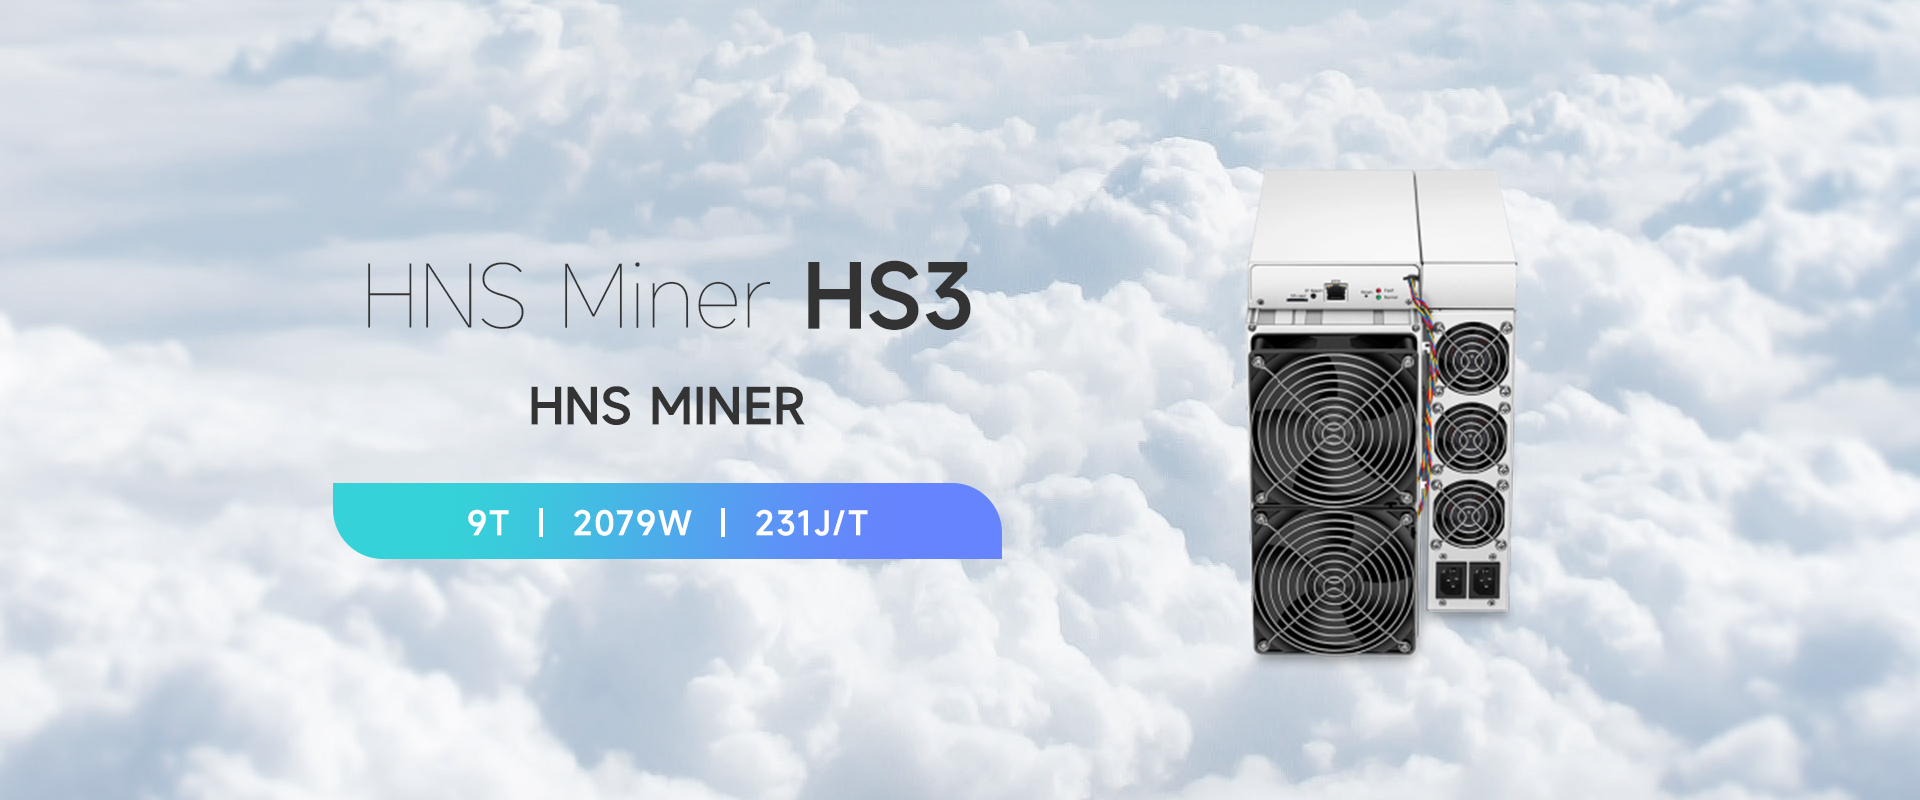 HNS-Miner-HS3-01